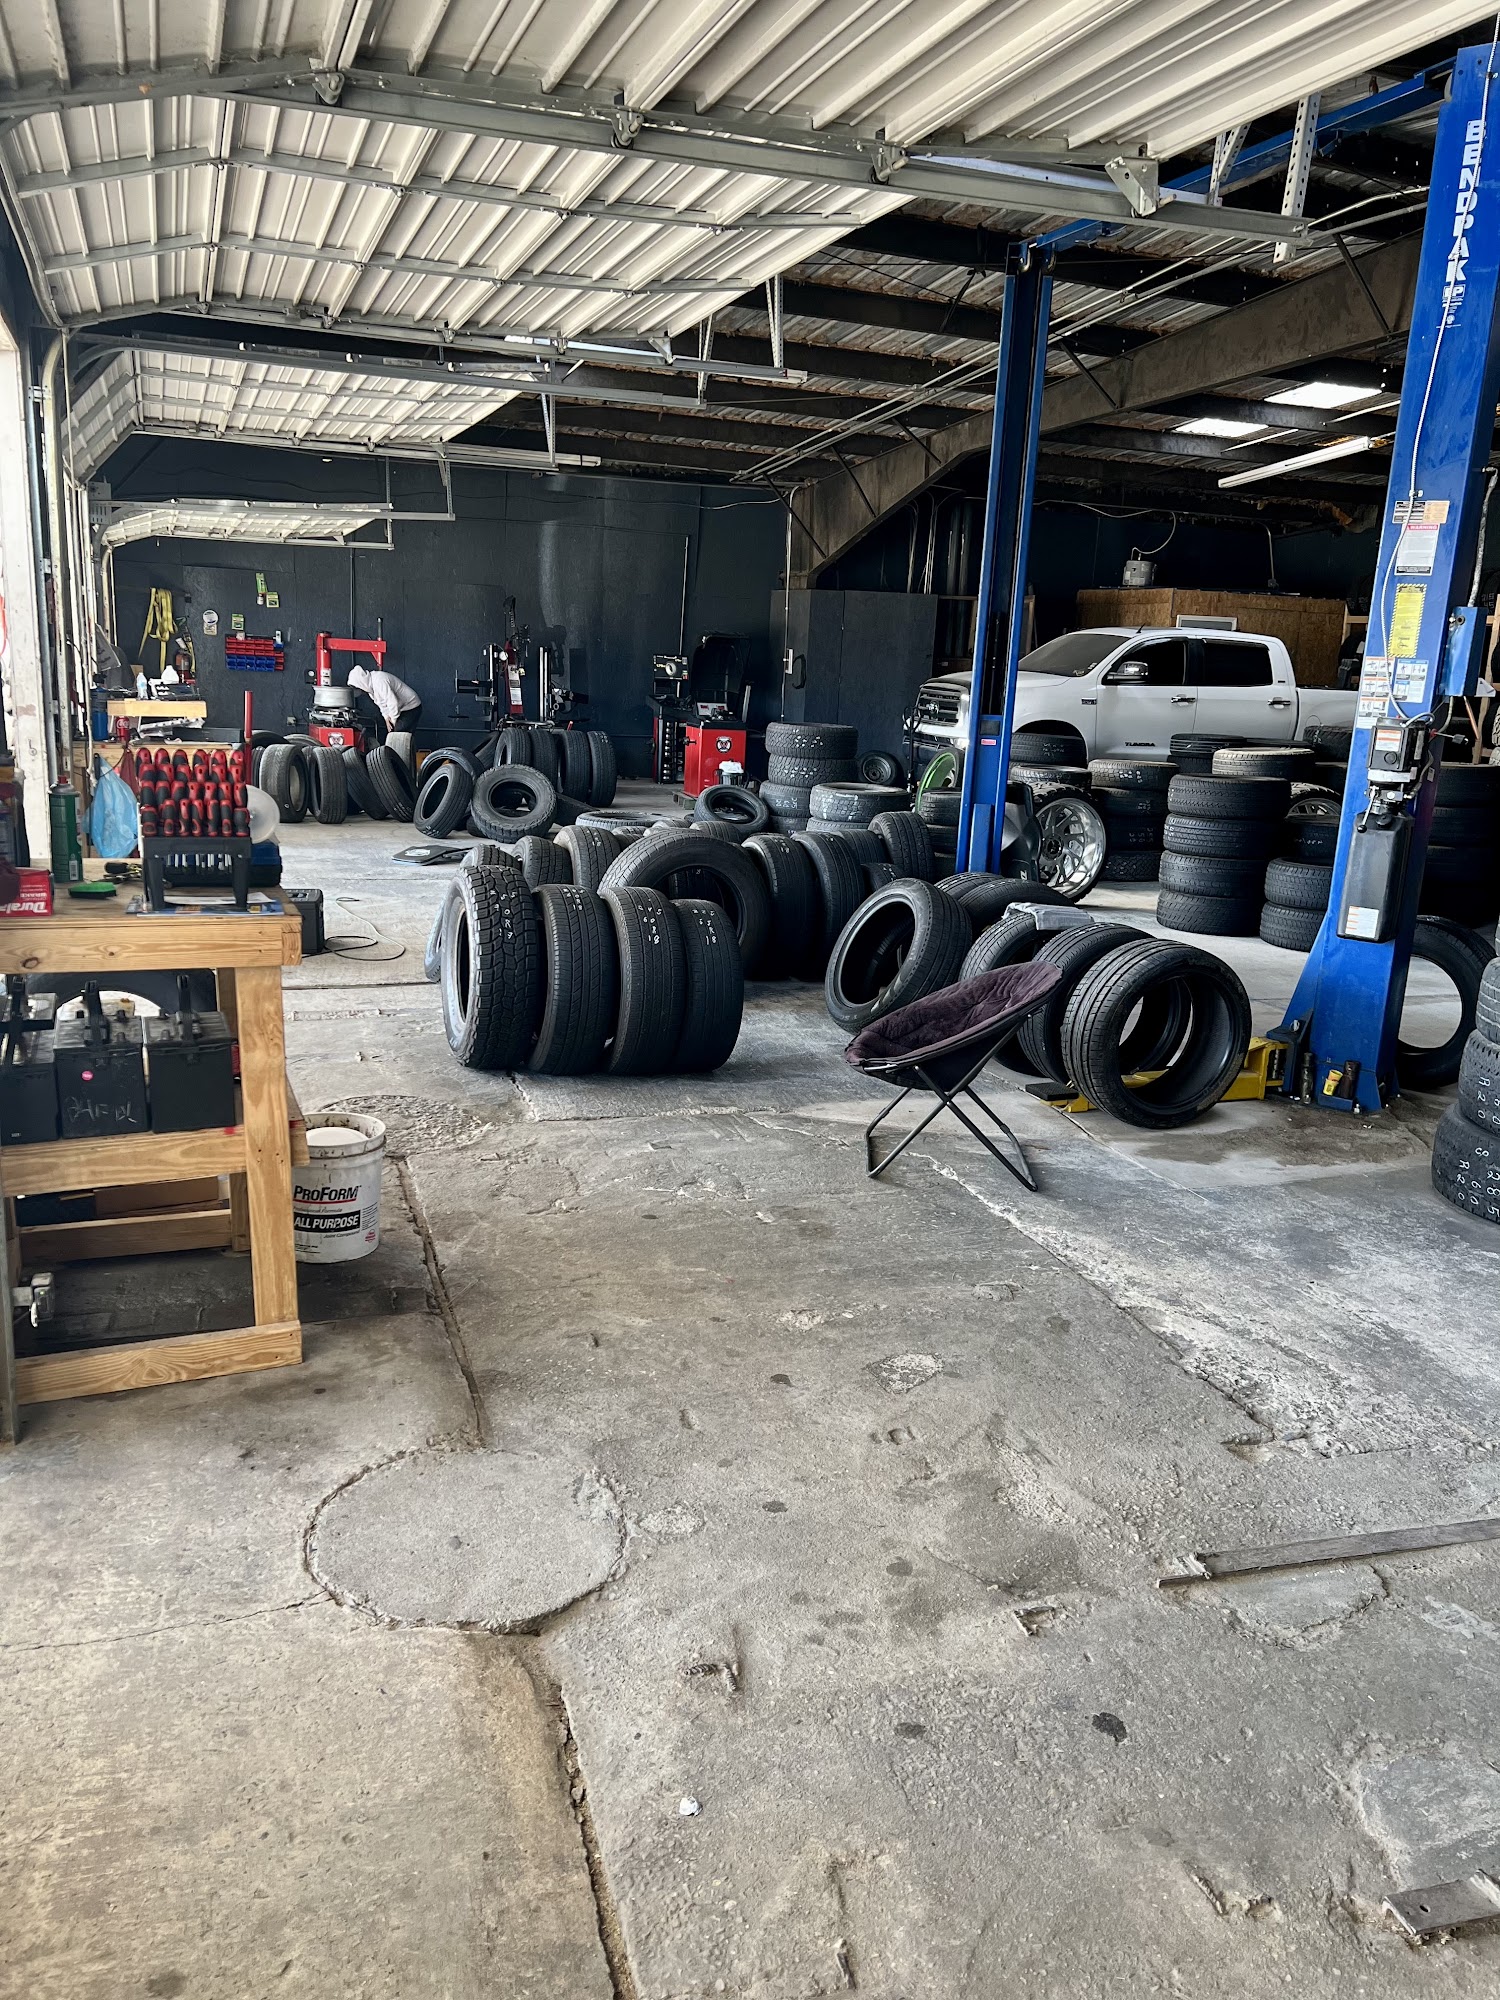 El Tapatio Tire Shop and Auto repair